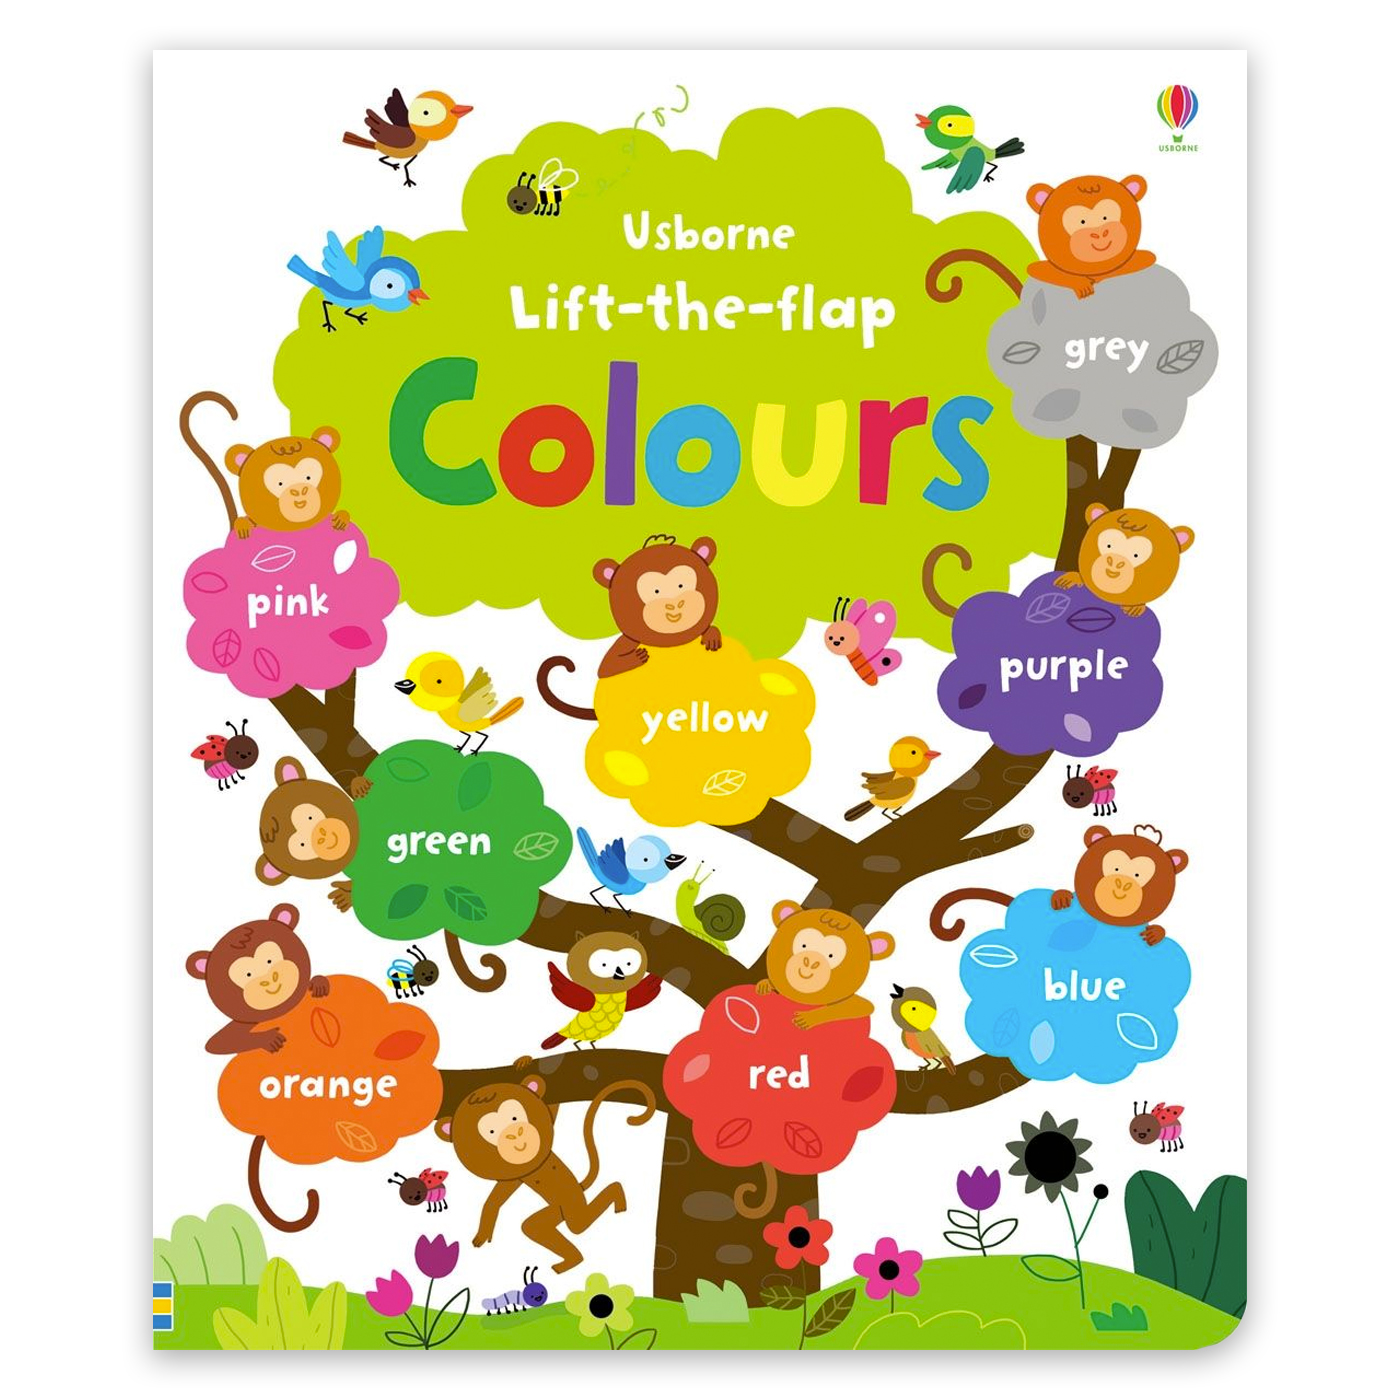  Lift-the-flap Colours